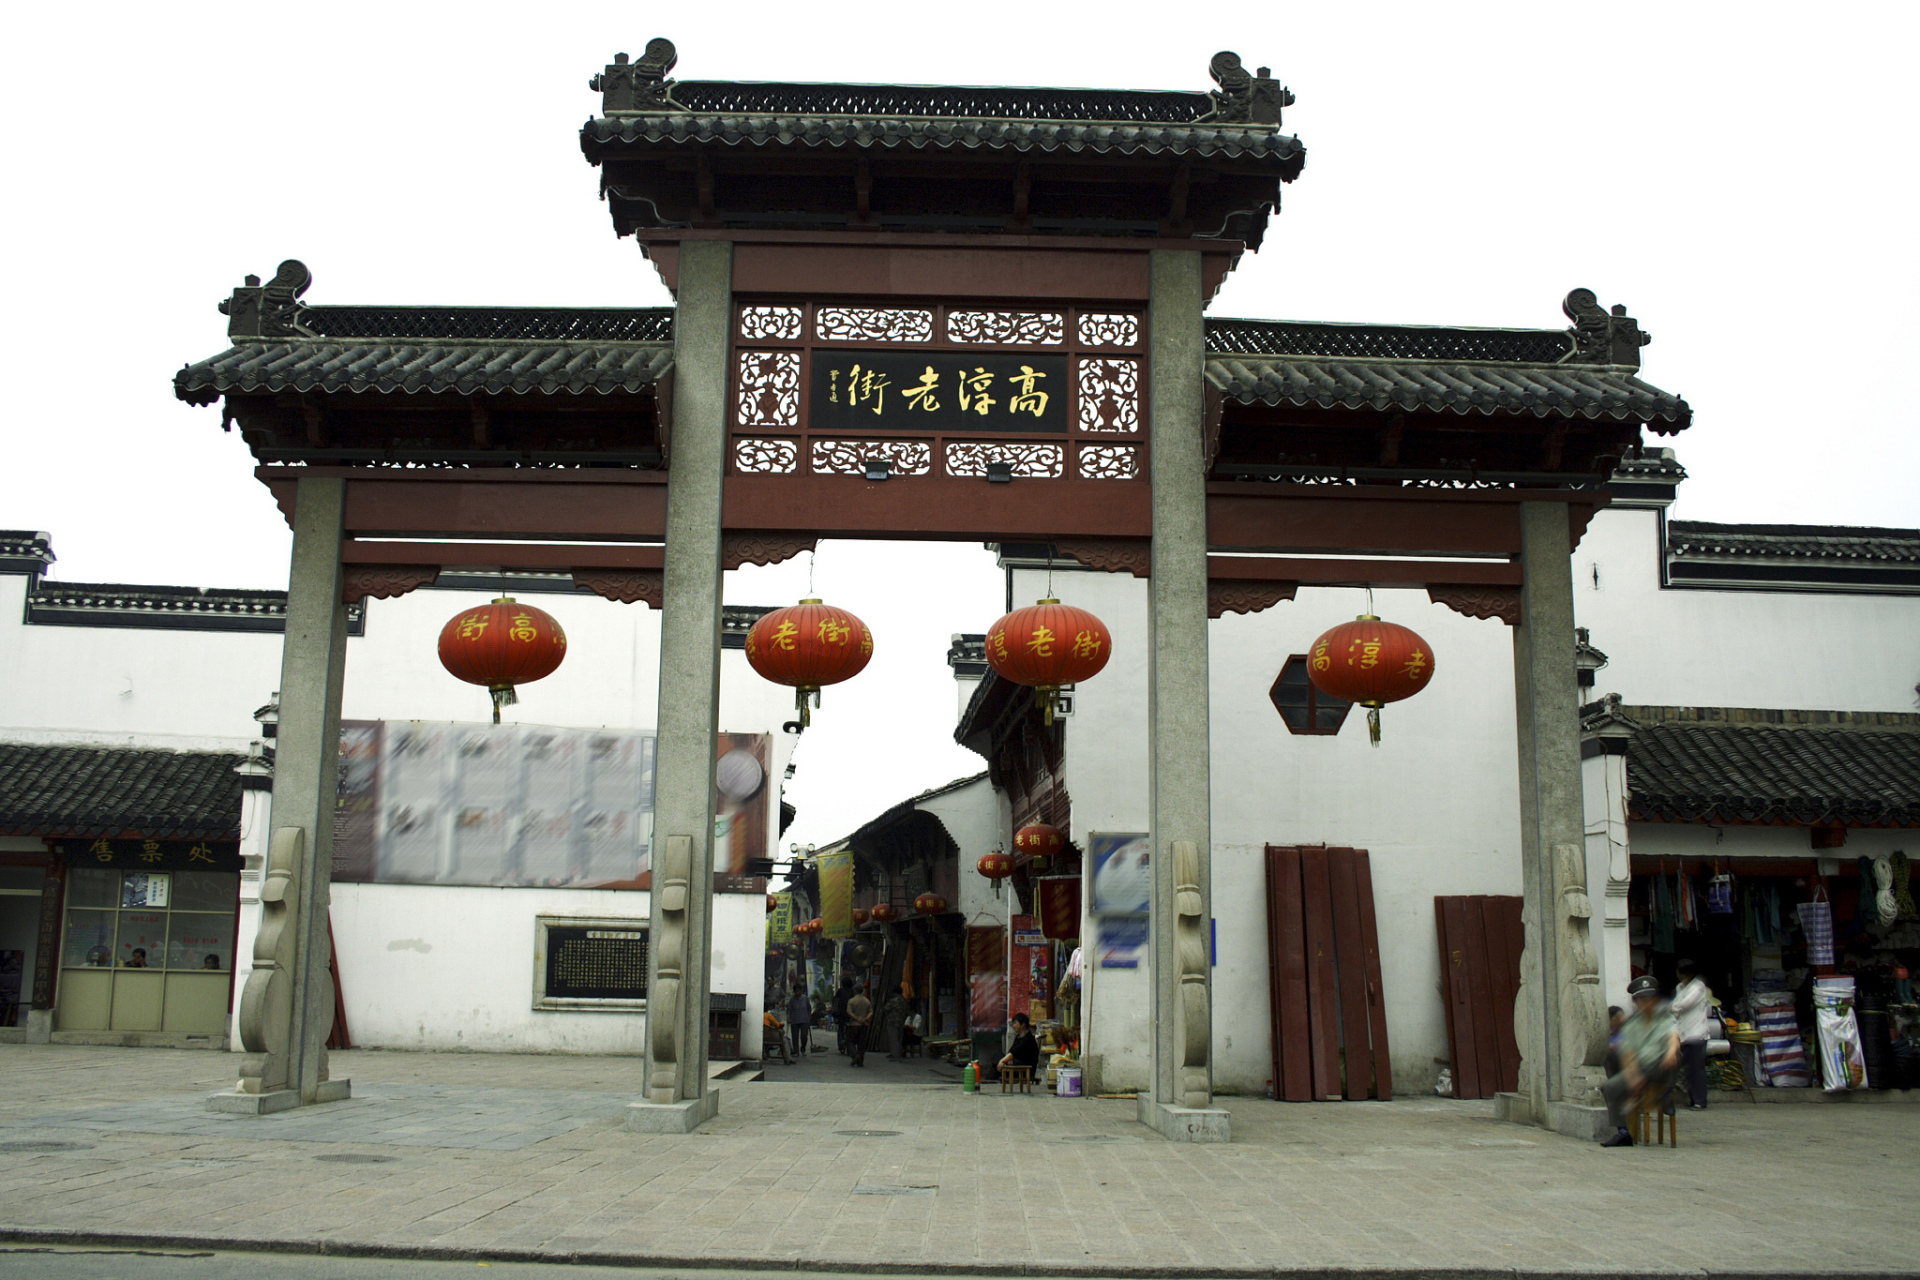 南京高淳区历史悠久,文化底蕴深厚,拥有许多自然美景和丰富的文化遗产